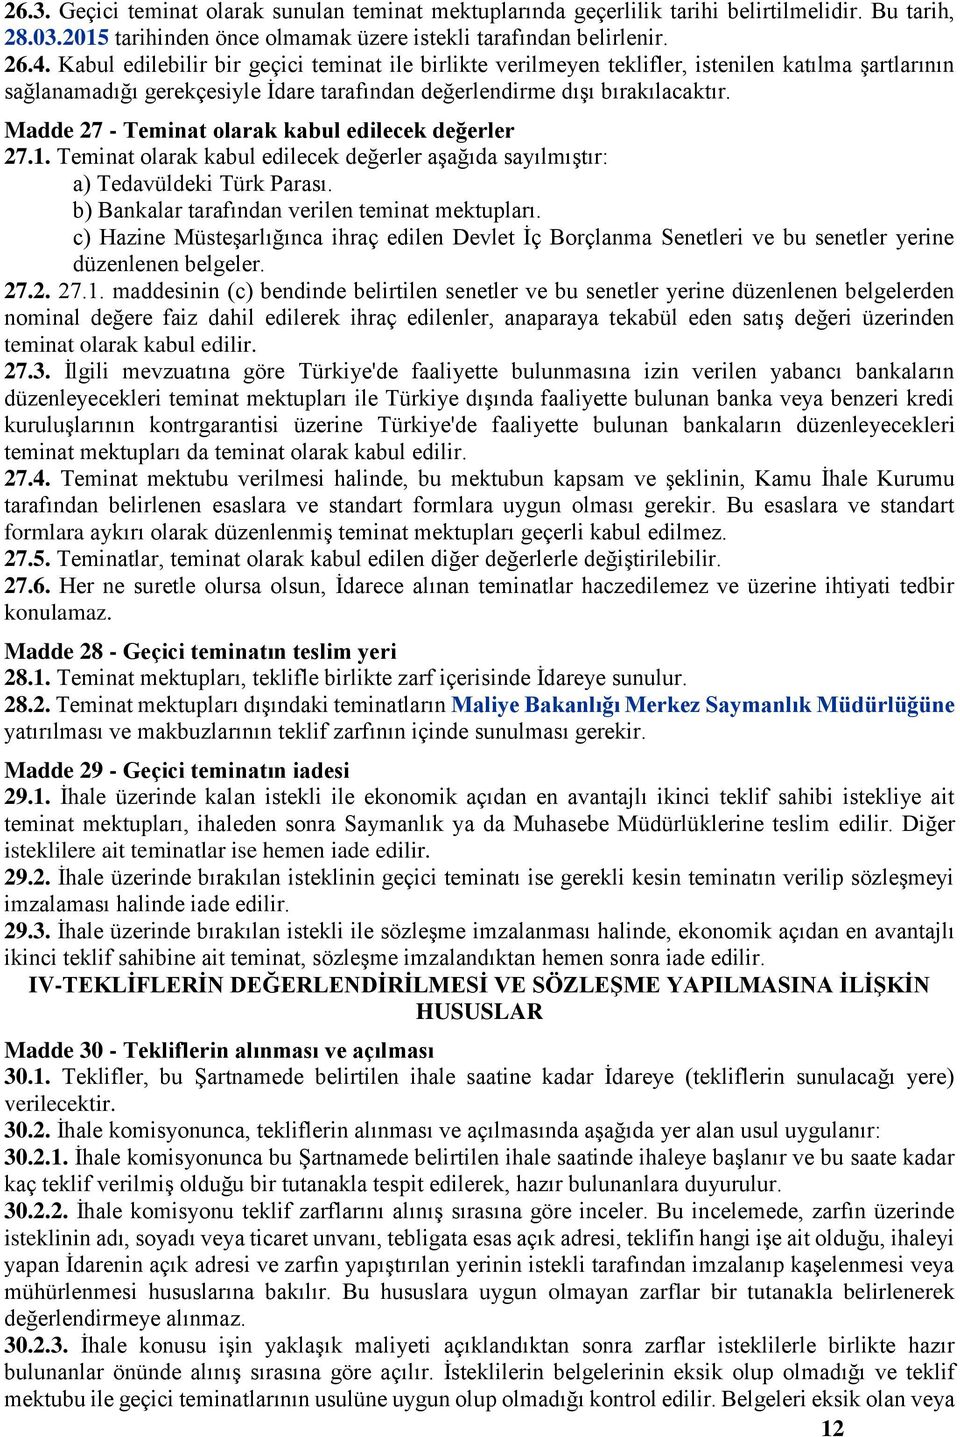 Madde 27 - Teminat olarak kabul edilecek değerler 27.1. Teminat olarak kabul edilecek değerler aşağıda sayılmıştır: a) Tedavüldeki Türk Parası. b) Bankalar tarafından verilen teminat mektupları.